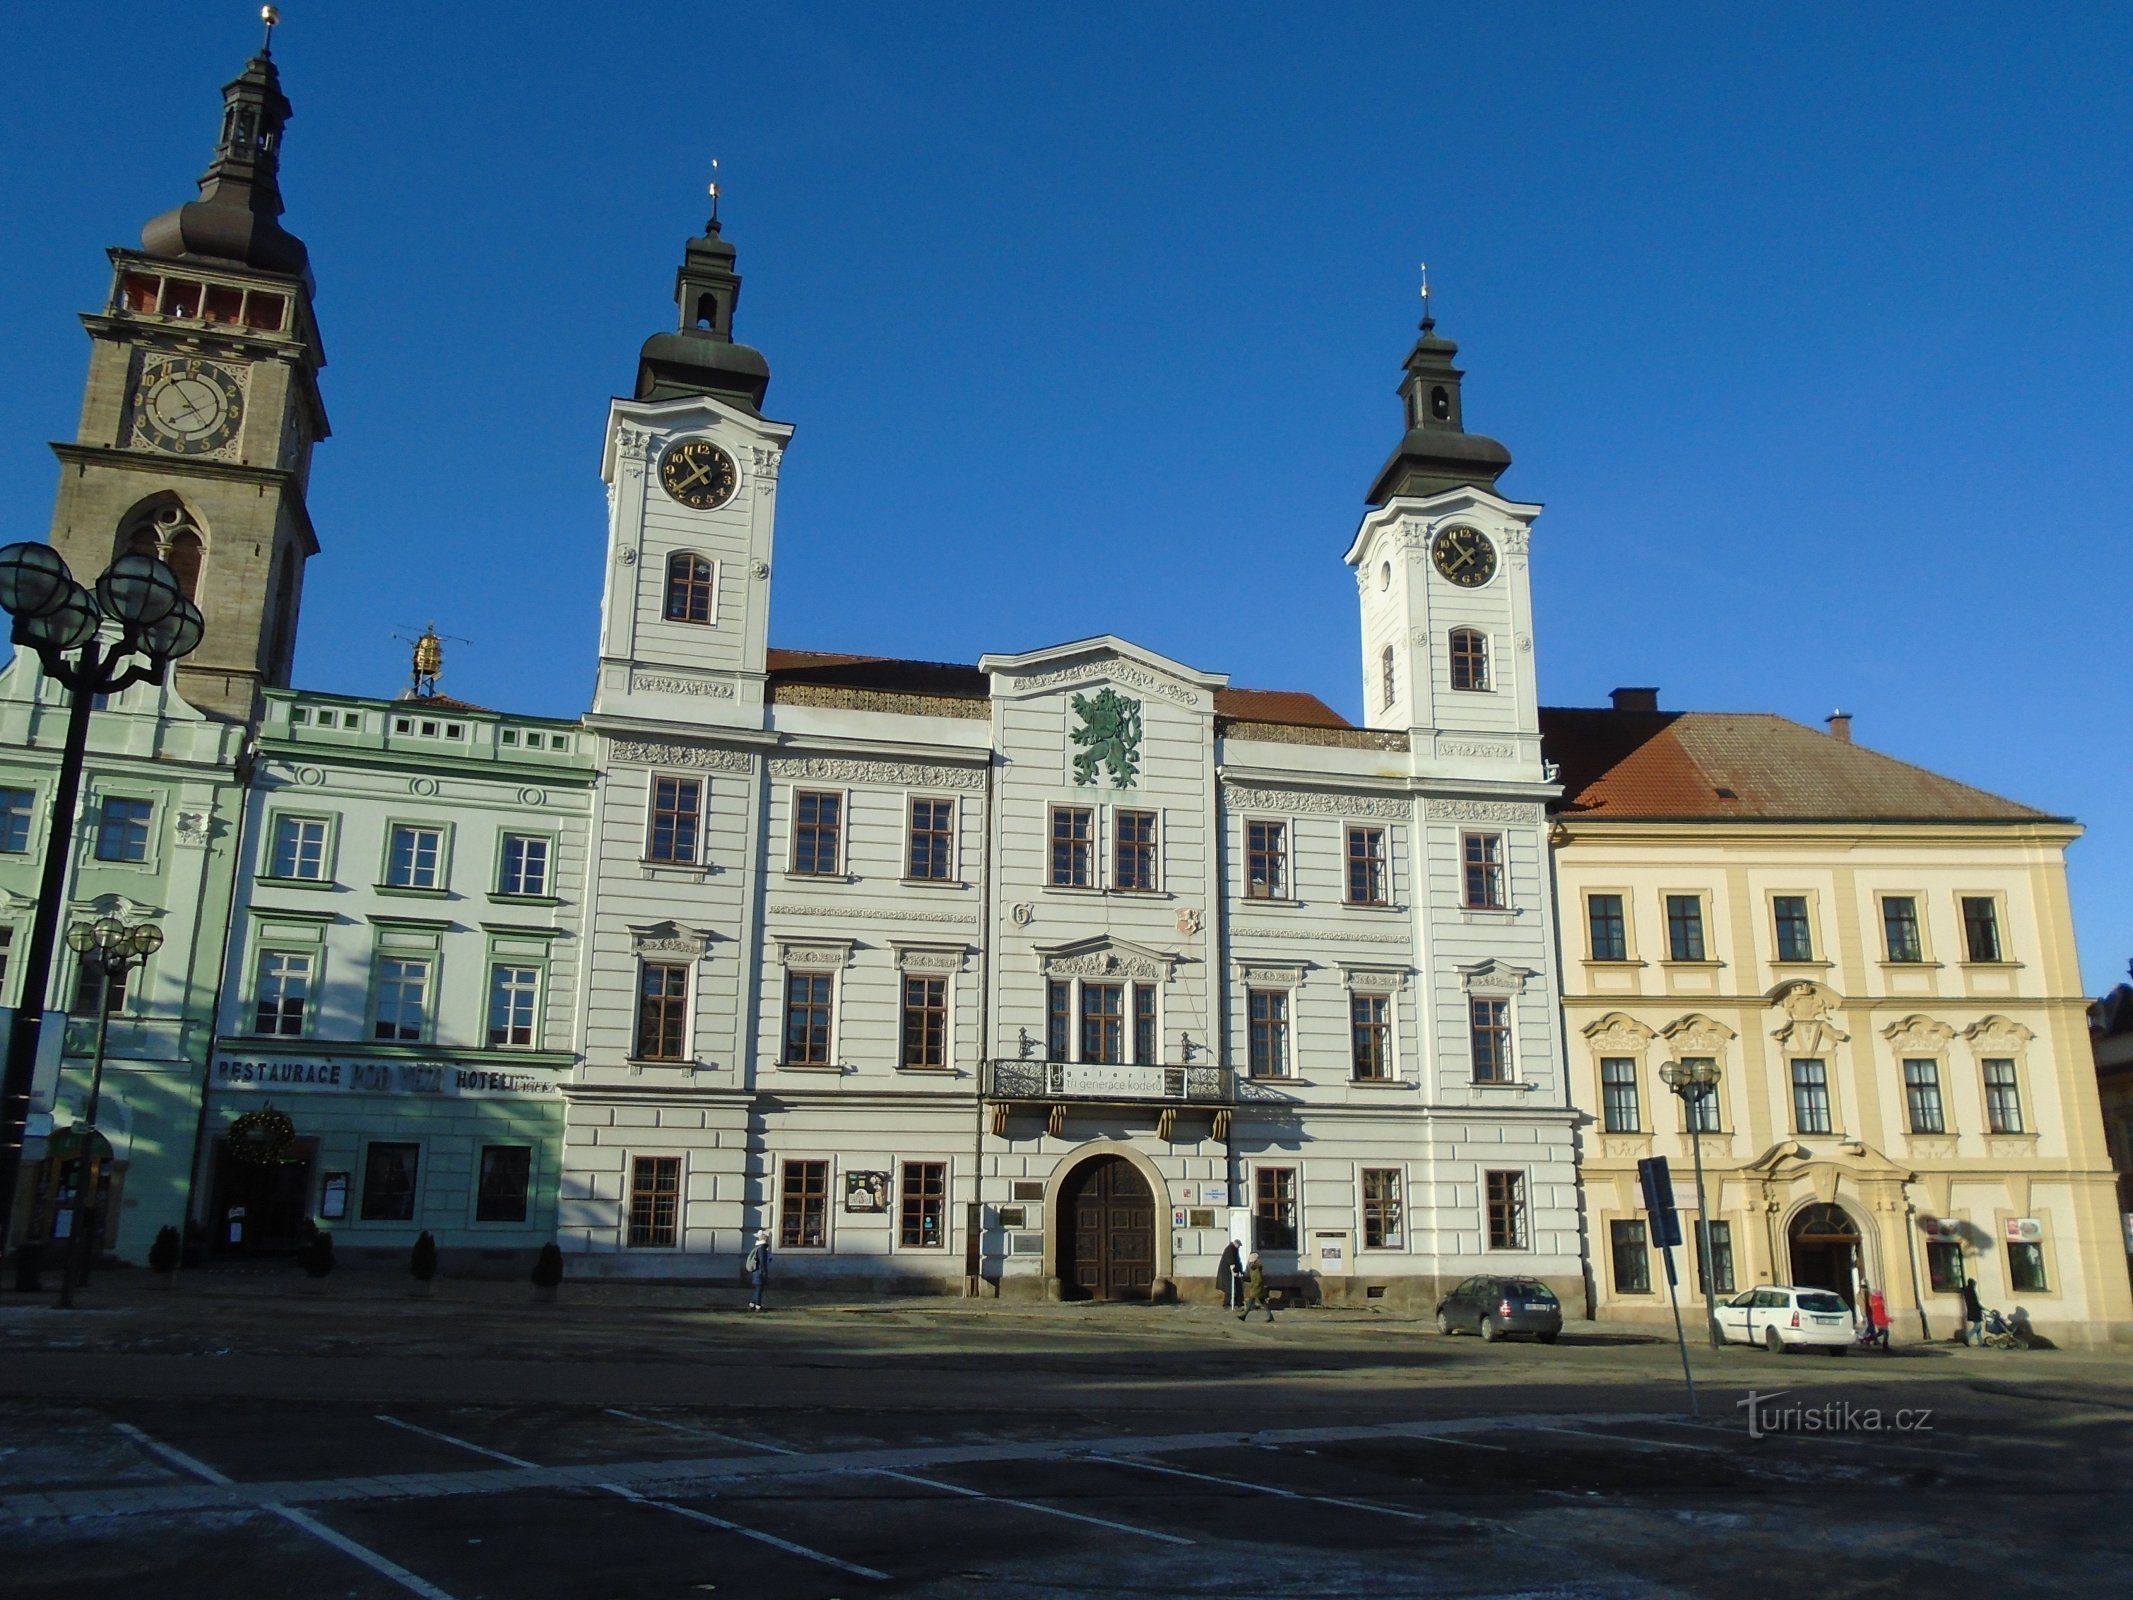 Velké náměstí No. 1 (Hradec Králové, 10.12.2017. október XNUMX.)